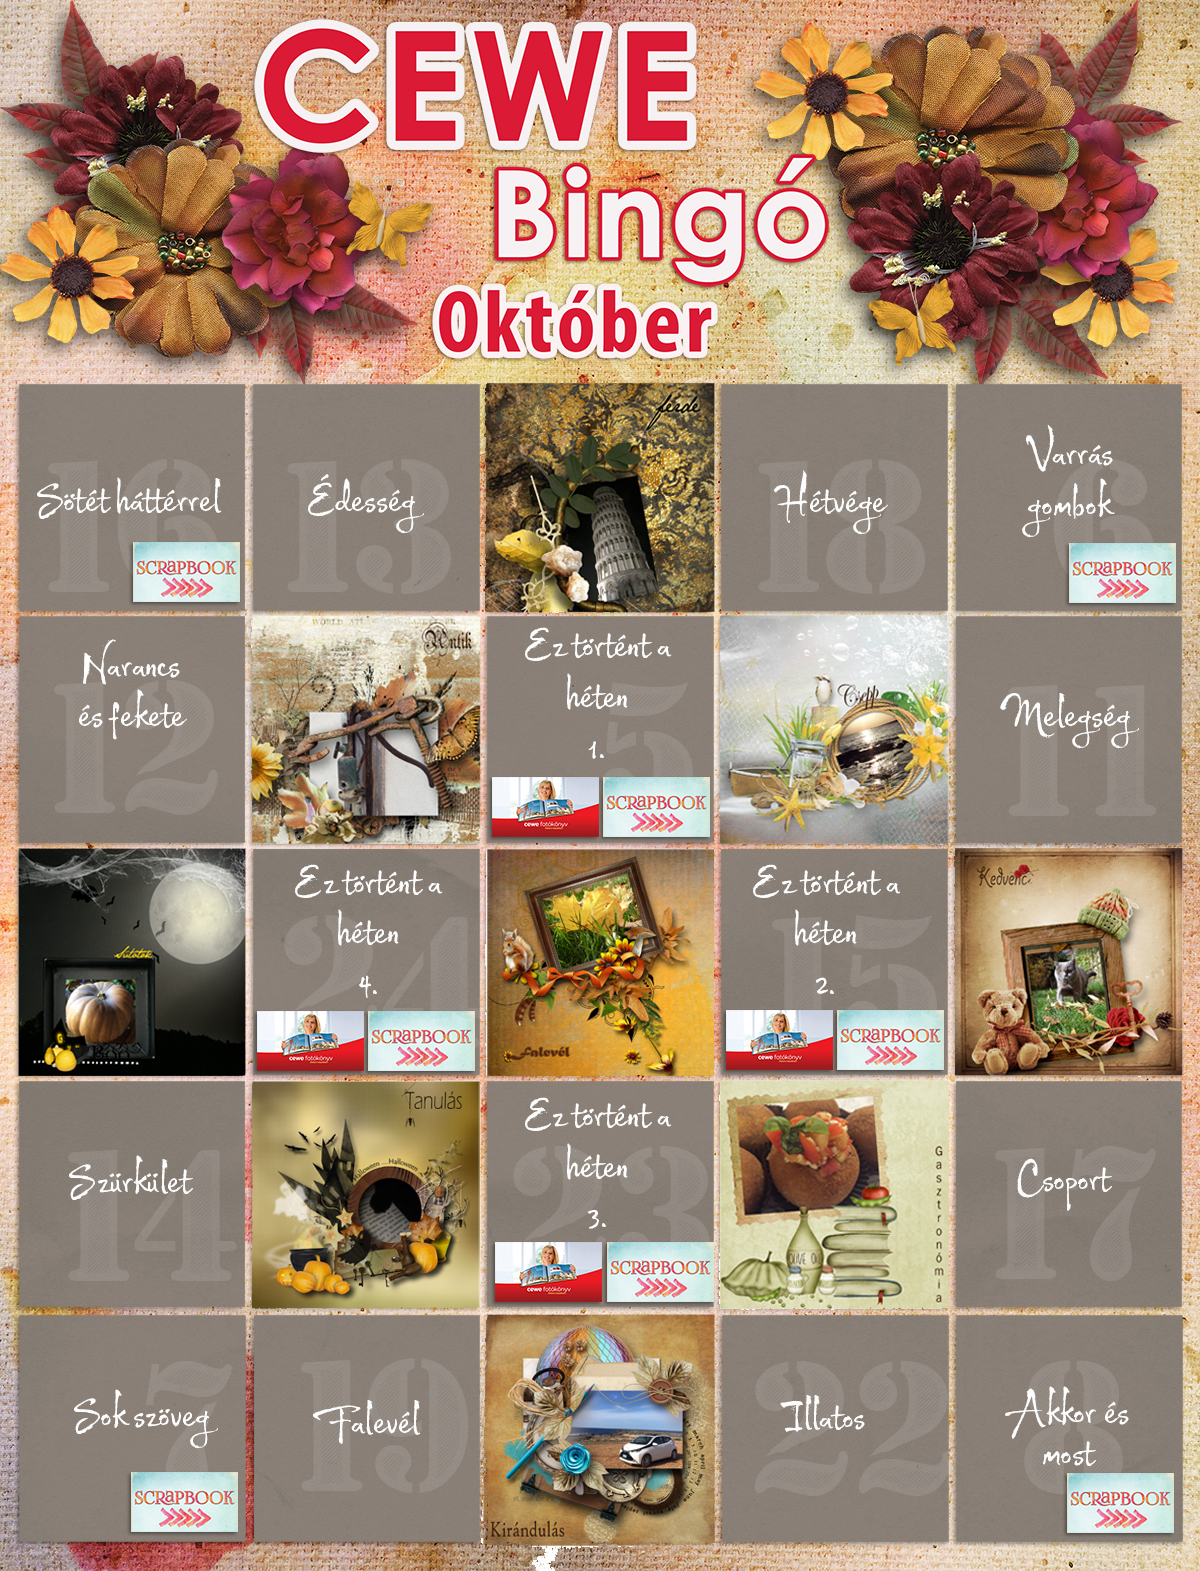 Oktober_bingo_SG